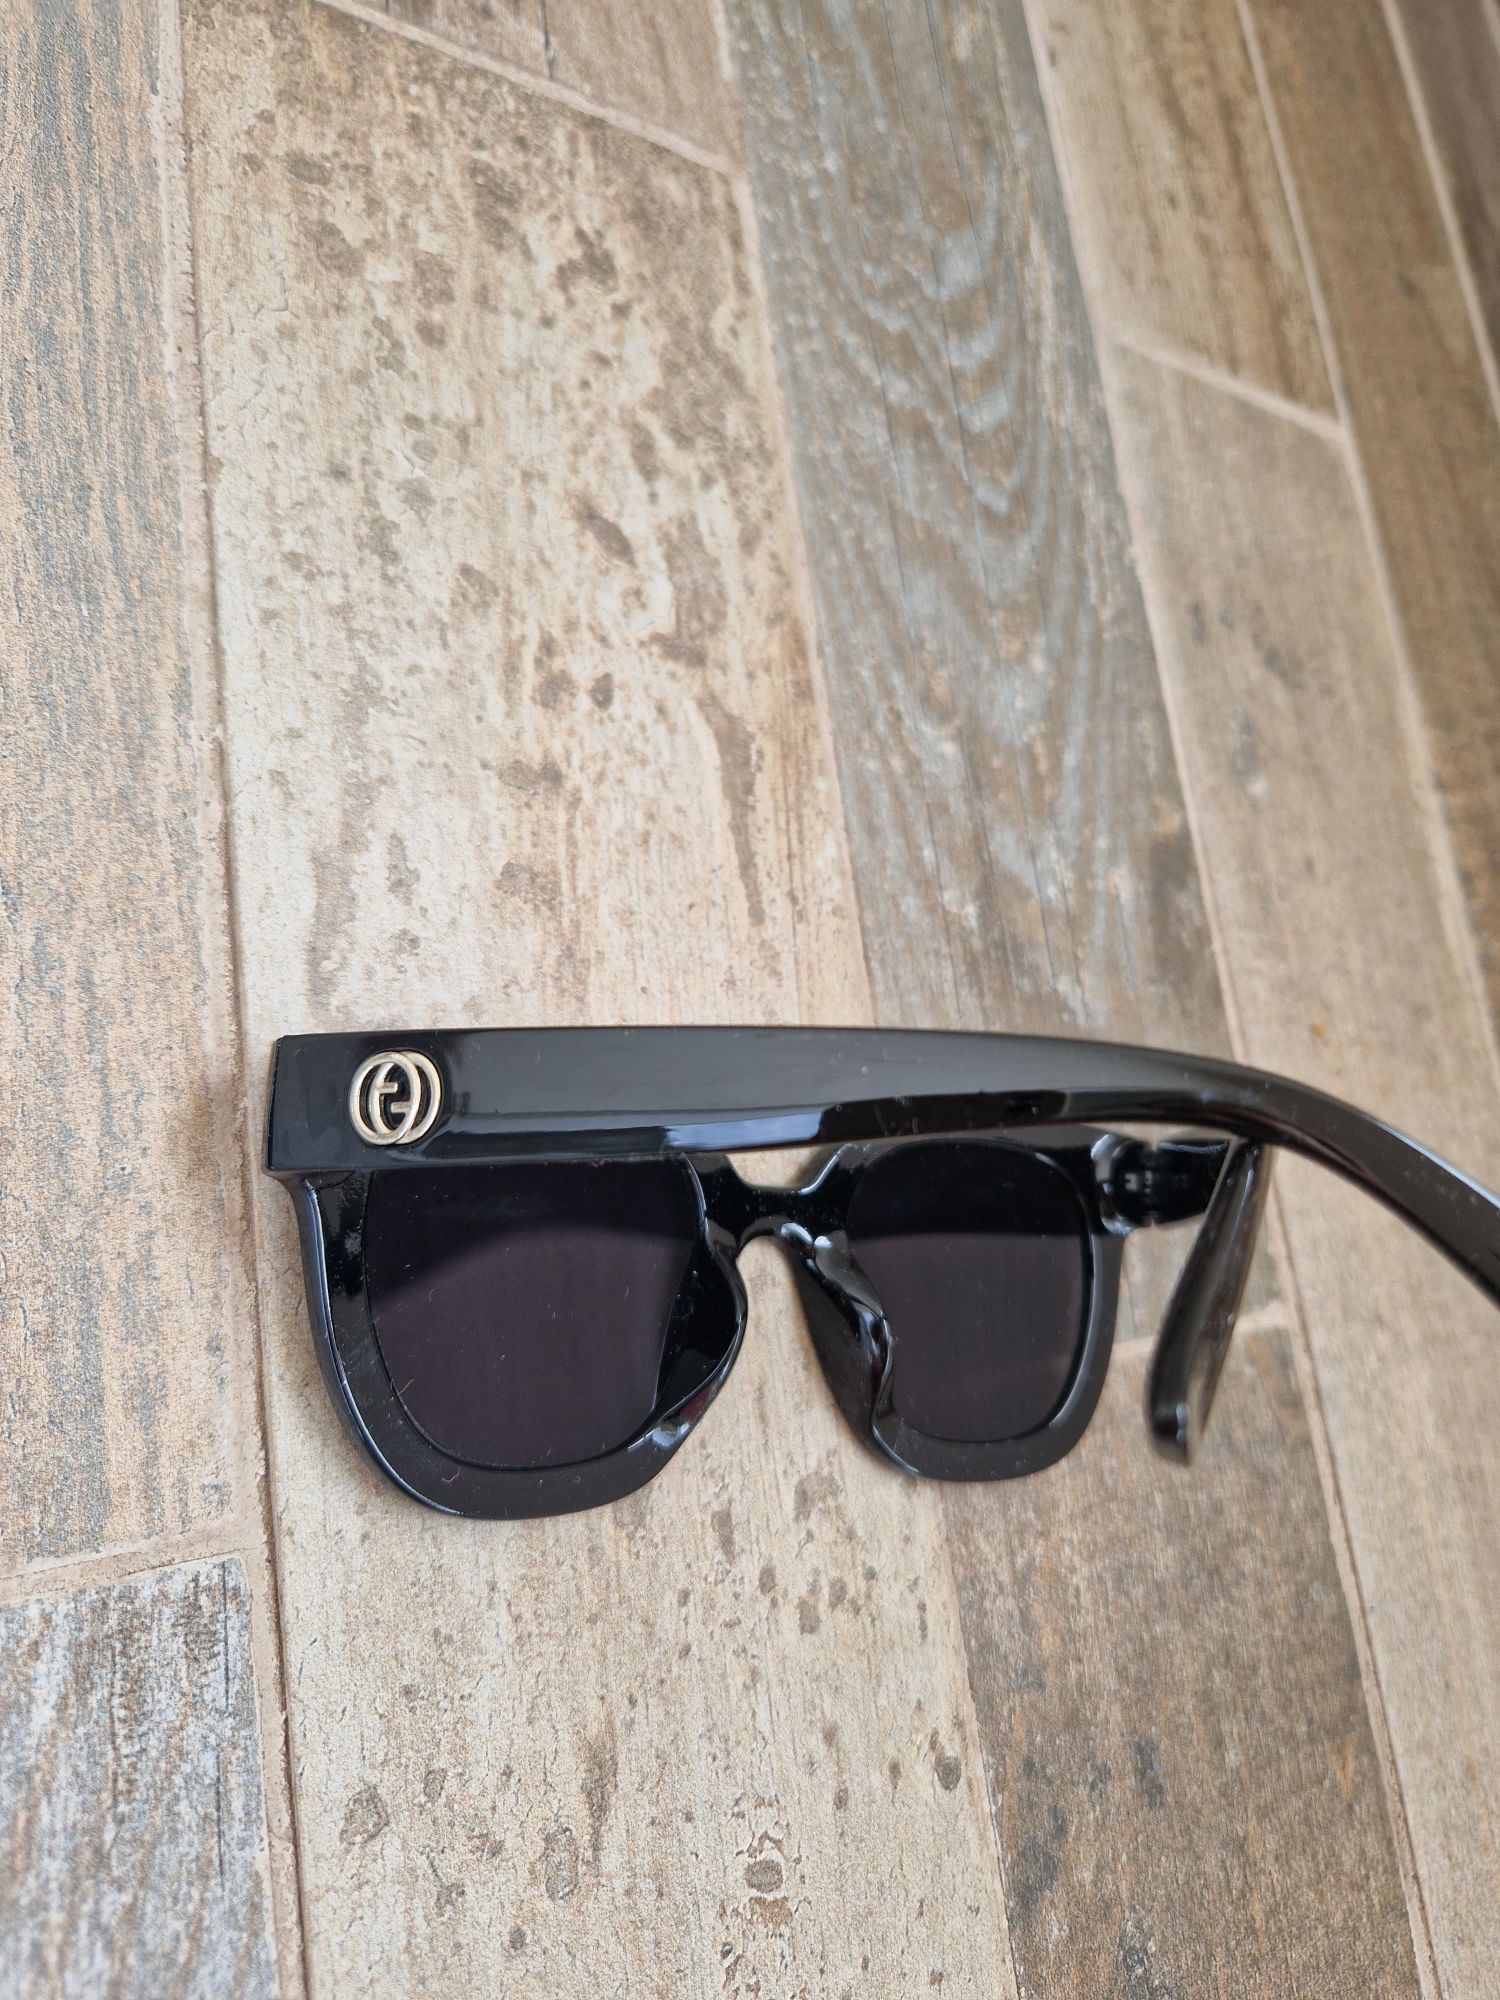 Дамски слънчеви очила със слънчева защита UV400